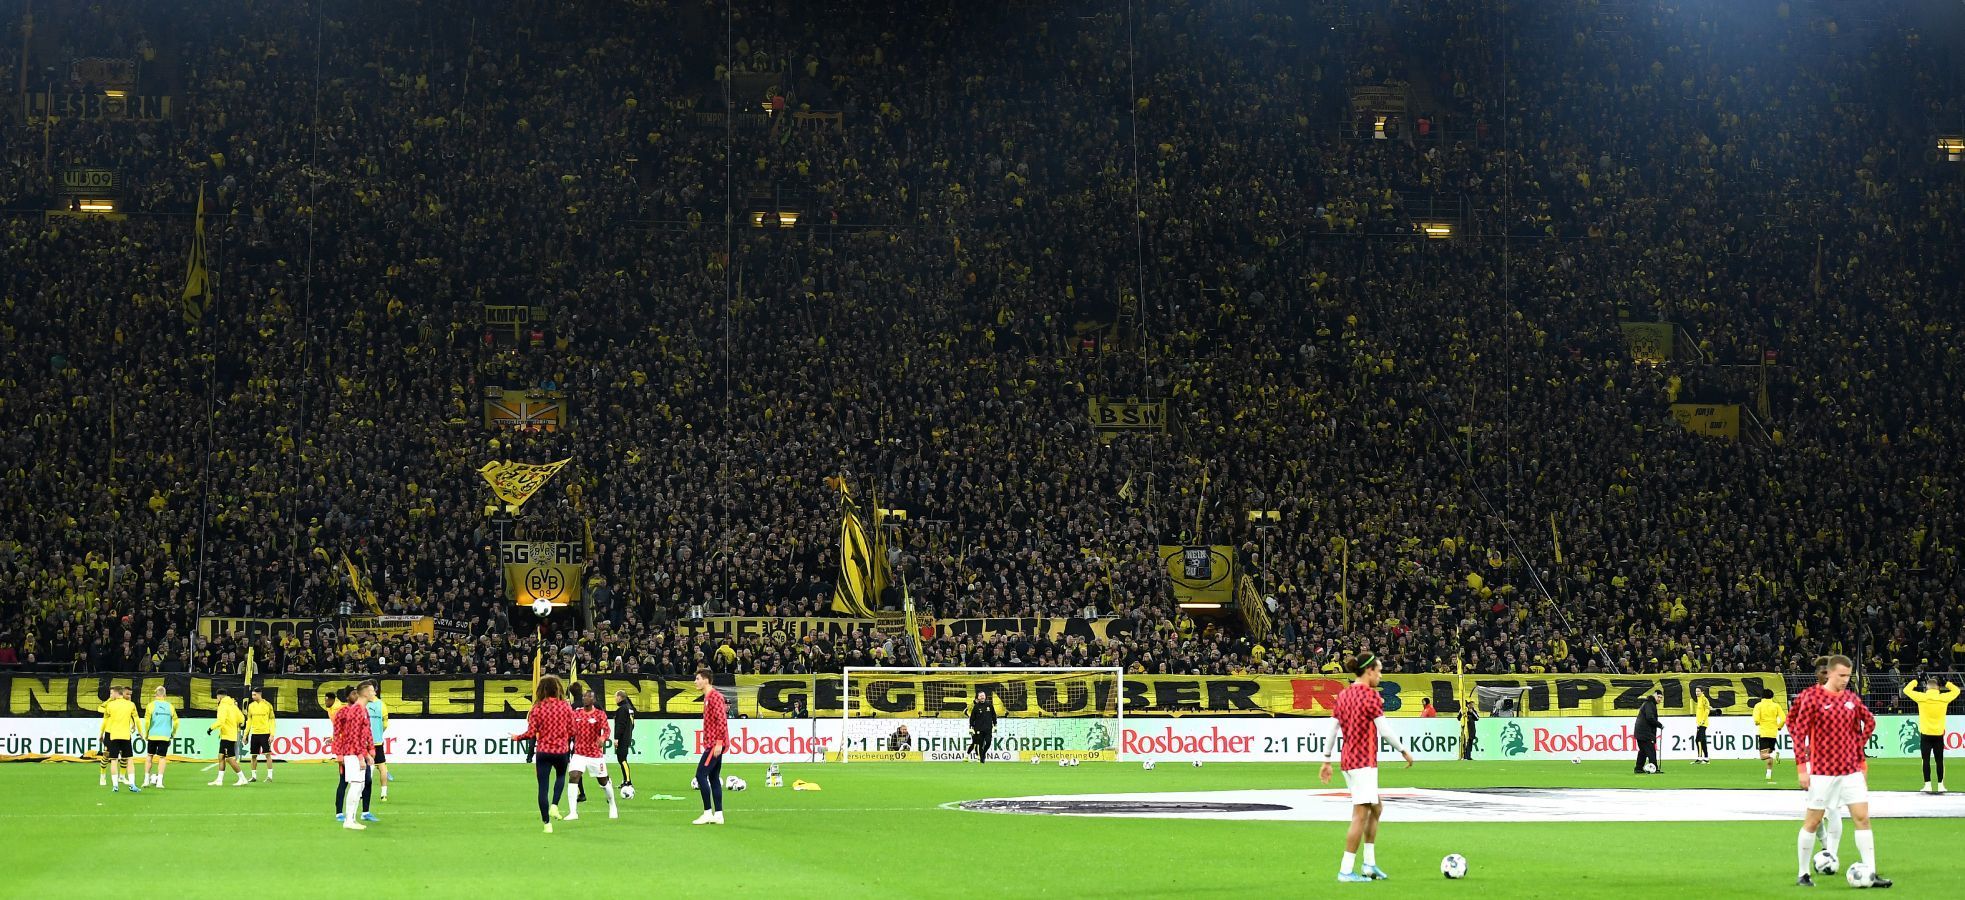 
                <strong>BVB-Fans protestieren mit Choreo gegen RB Leipzig</strong><br>
                Im Topspiel des 16. Spieltags der Bundesliga-Saison 2019/20 haben die Fans gegen Borussia Dortmund ihren Unmut gegen Tabellenführer RB Leipzig zum Ausdruck gebracht. Vor der Südkurve spannten die Anhänger der Schwarz-Gelben ein Banner, auf dem zu lesen war: "Null Toleranz gegenüber RB Leipzig!". Es ist nicht das erste Mal, dass die Dortmunder Fans ihre Abneigung gegenüber dem Bundesliga-Konkurrenten zum Ausdruck bringen. 2017 attackierte ein Teil der BVB-Fans Anhänger von RB vor dem Signal Iduna-Park, auch geschmacklose Plakate von Dortmunder Zuschauern im Stadion überschatteten in der Vergangenheit das Duell.  
              